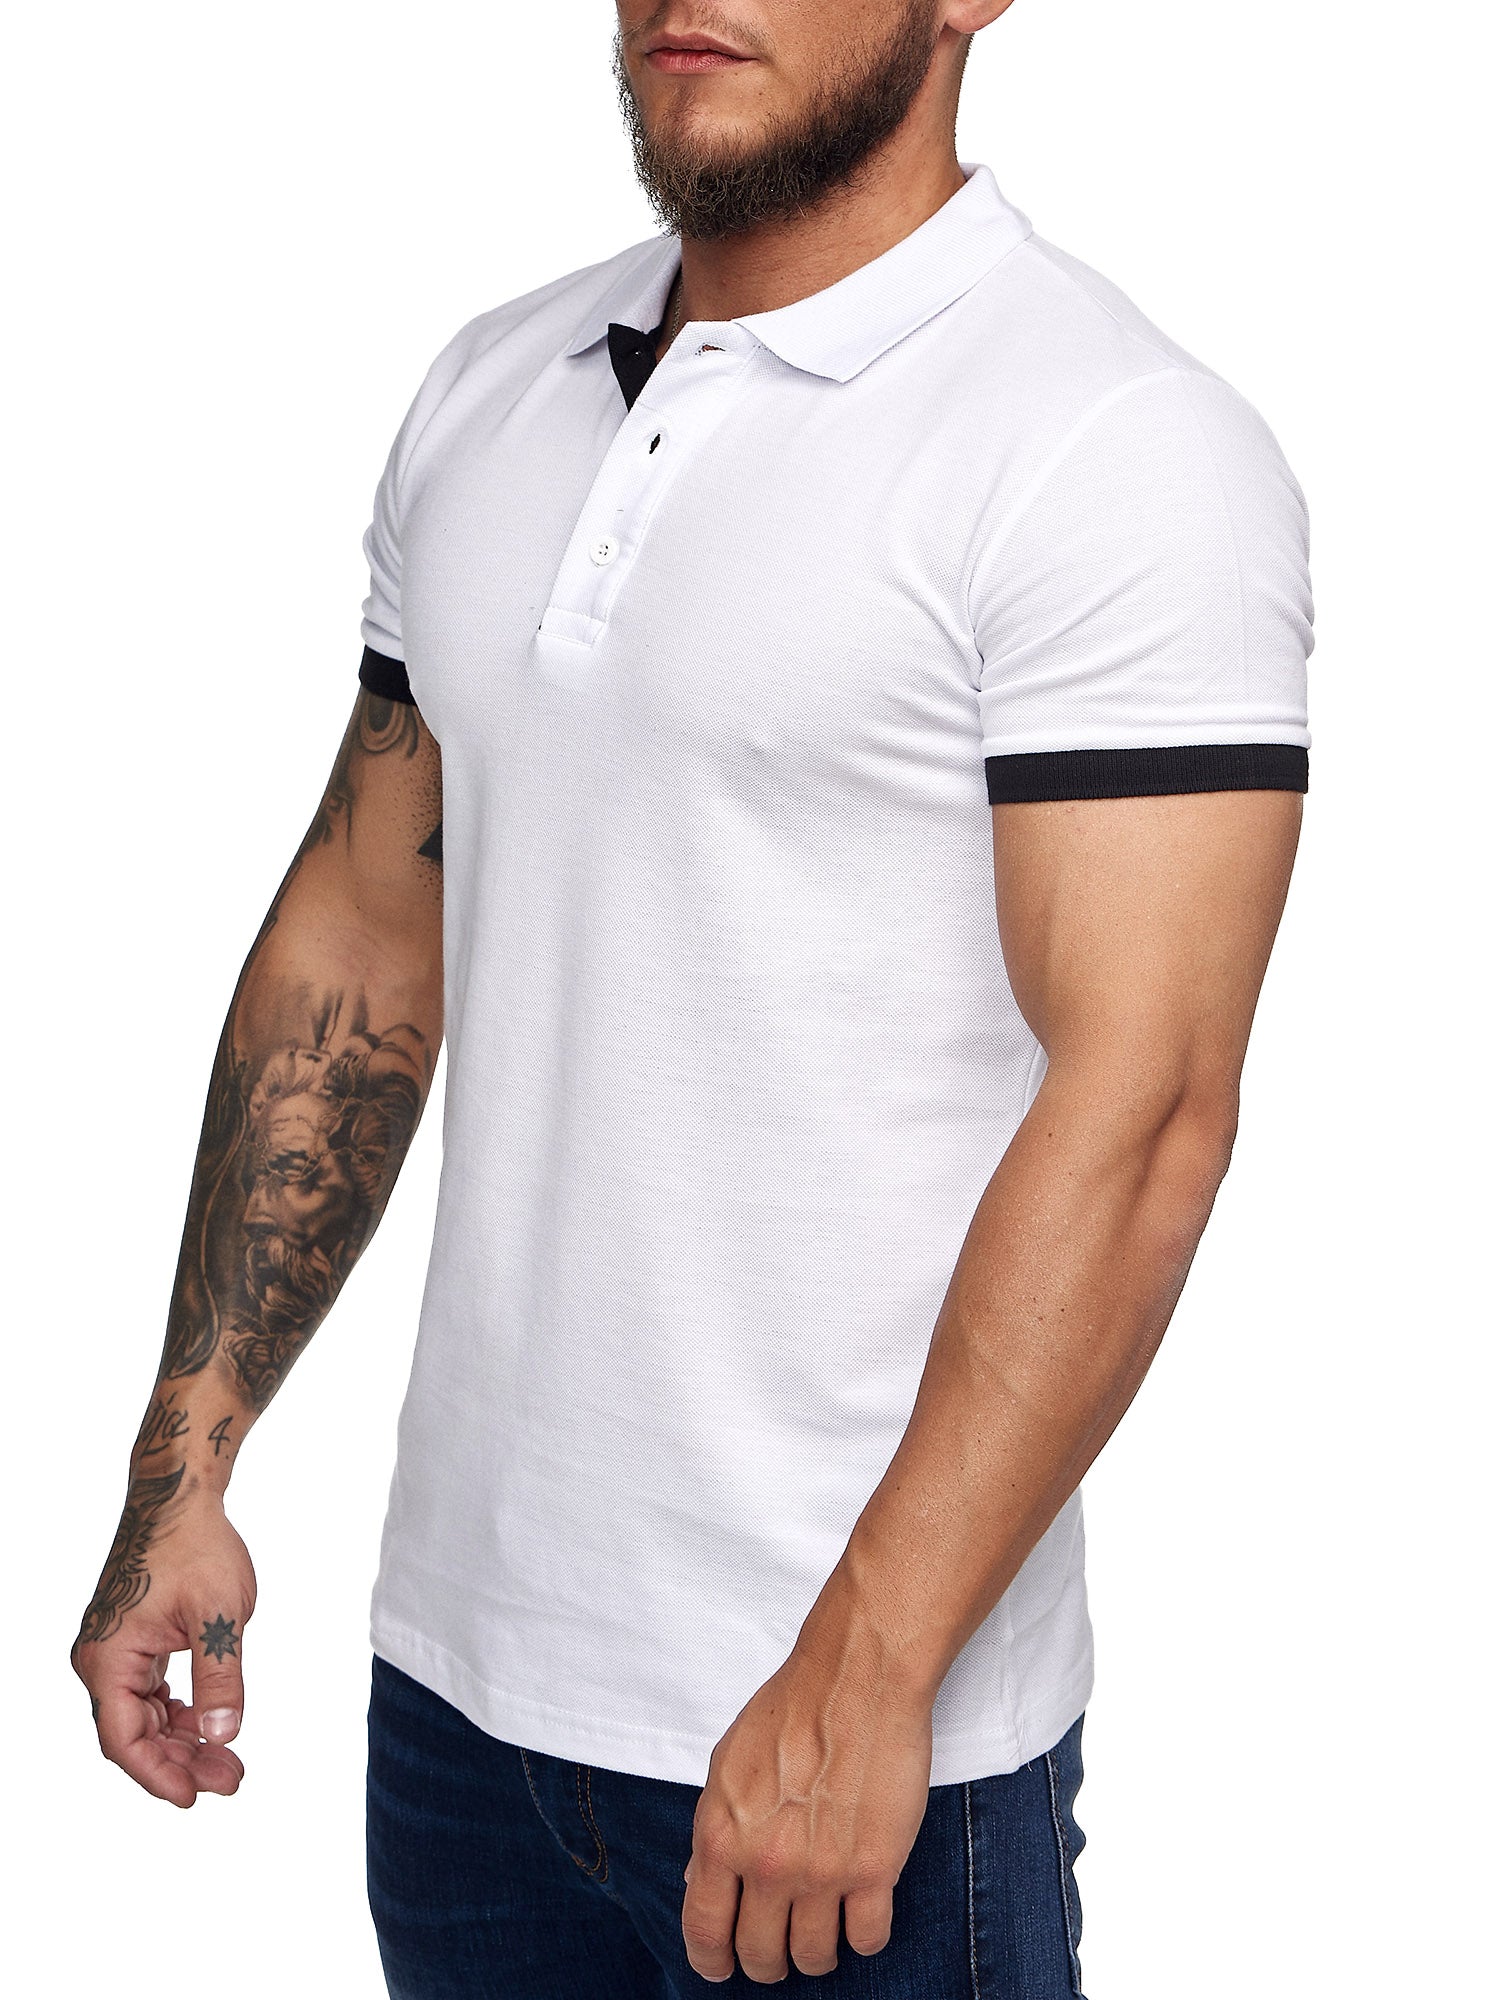 Planu Ringed Sleeves Polo T-Shirt - White X0015B - FASH STOP